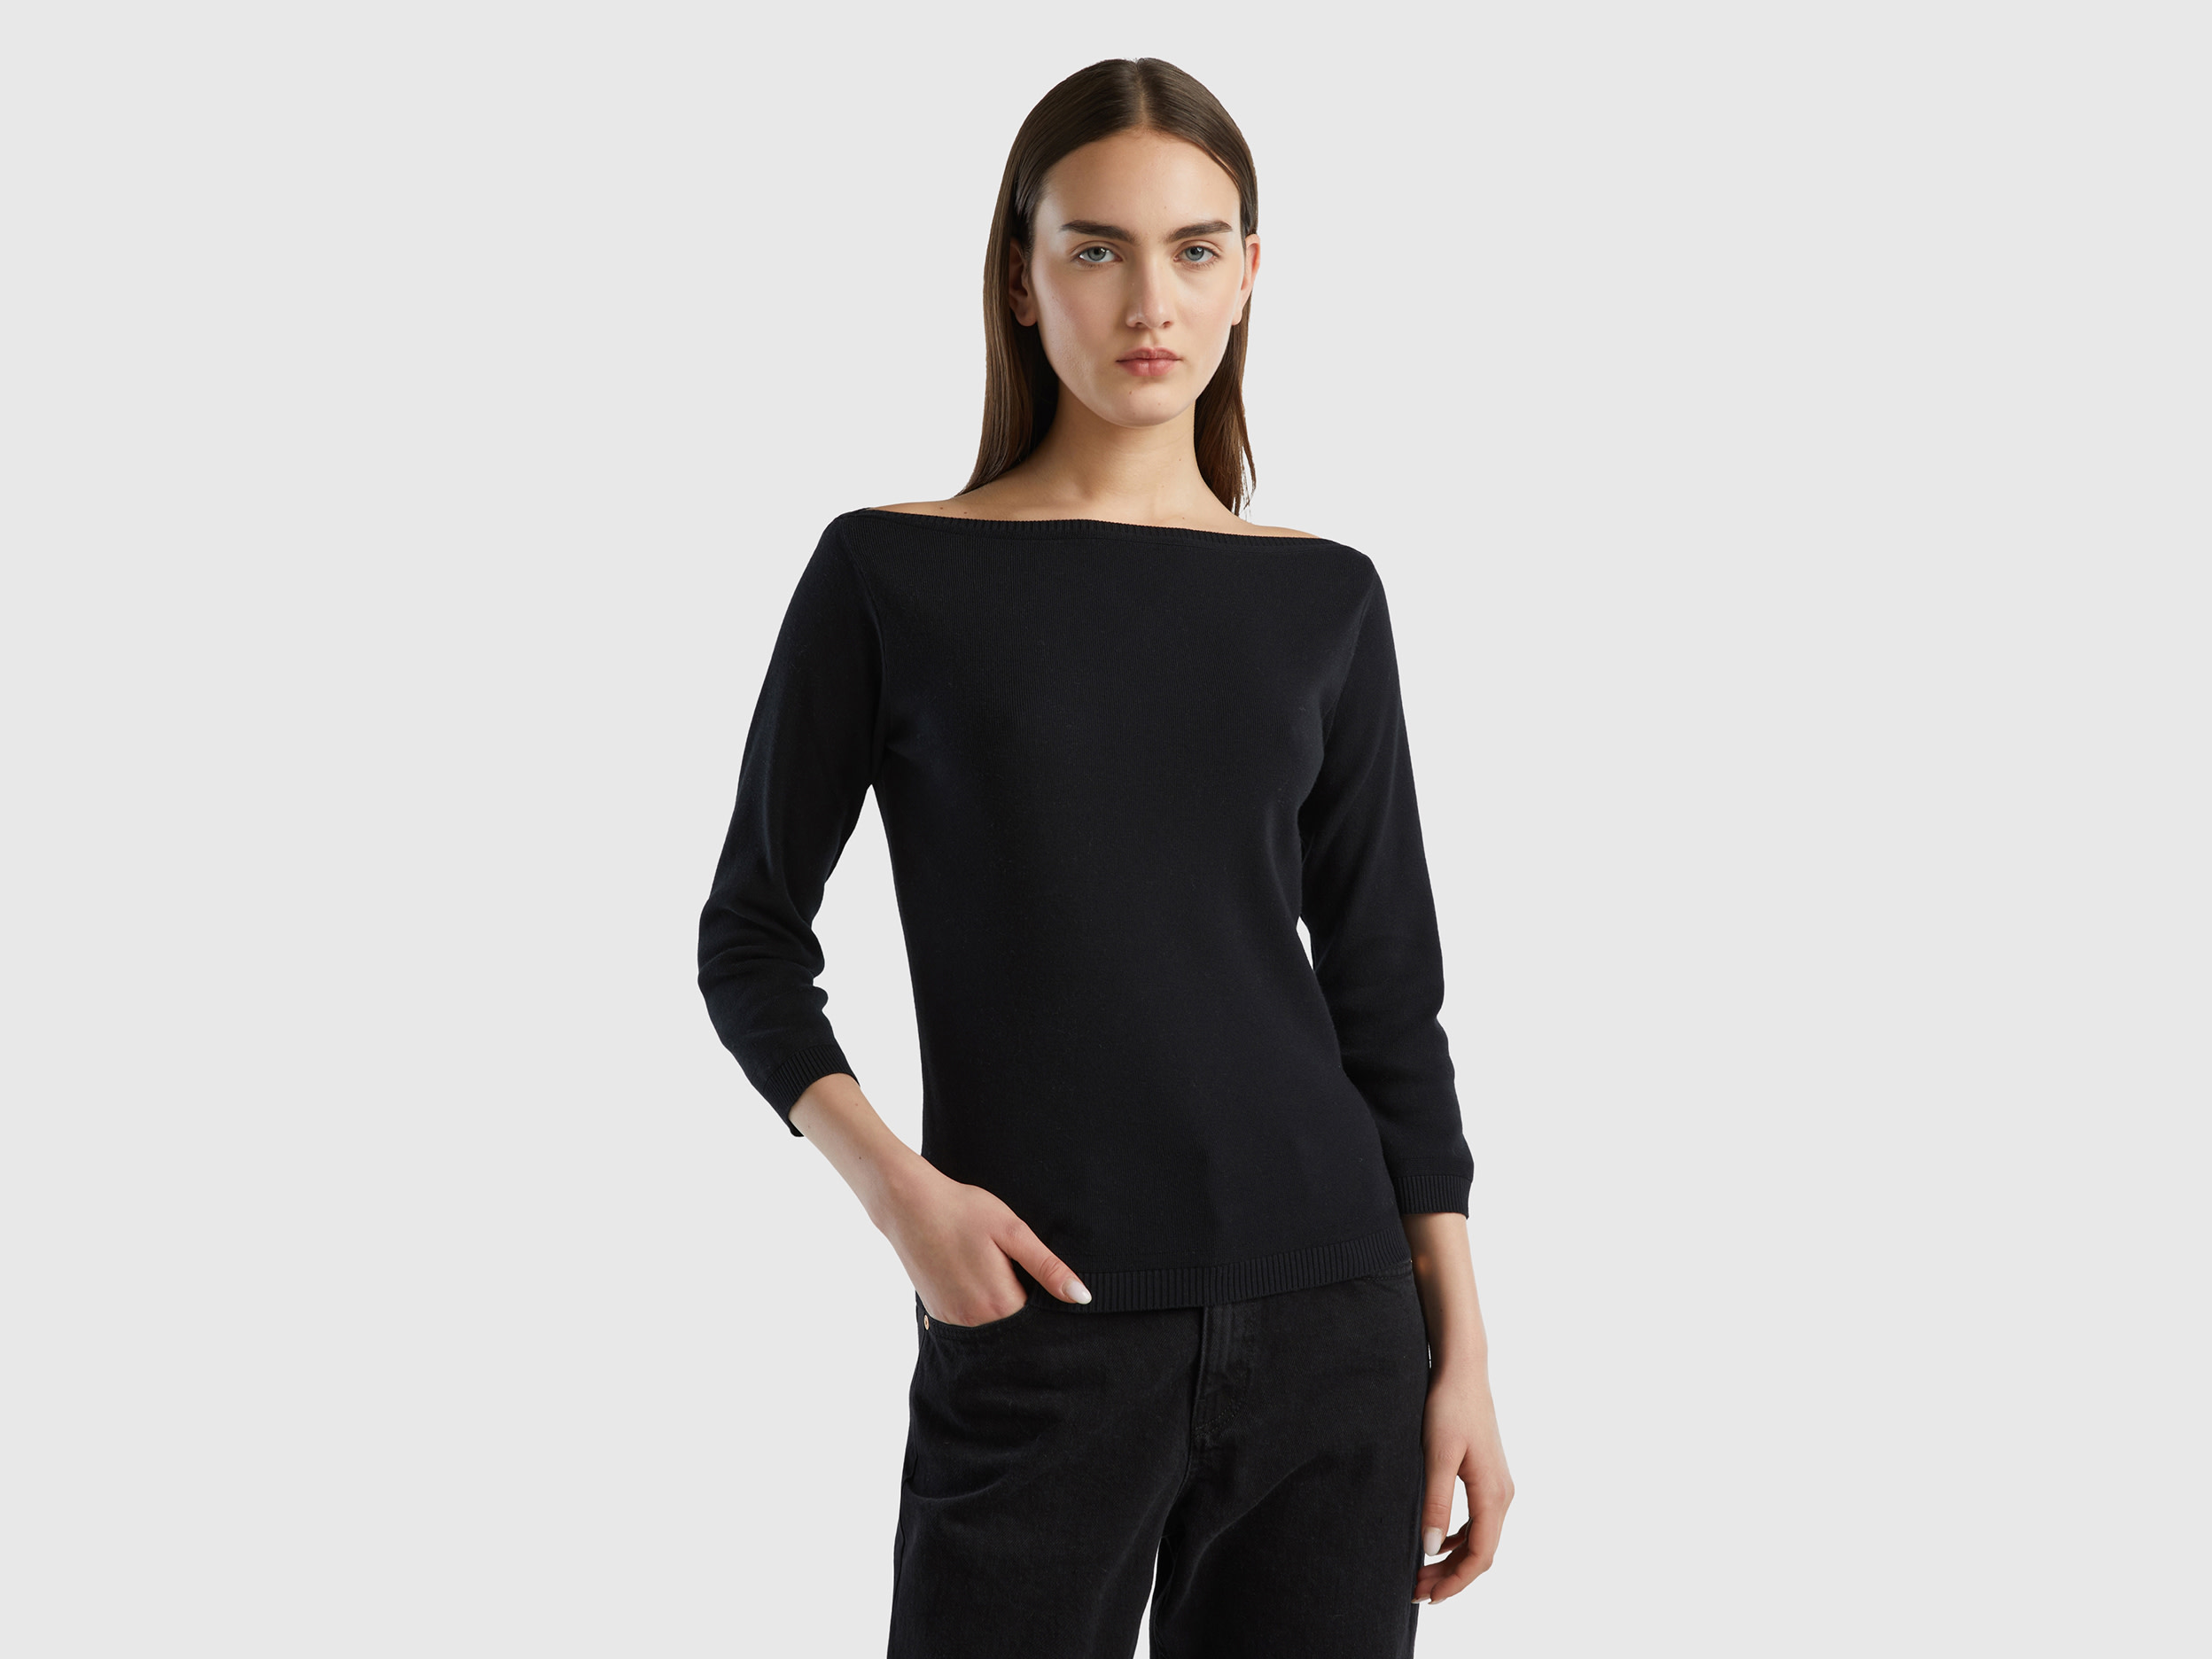 Benetton Online exclusive, 100% Cotton Boat Neck Sweater, size L, Black, Women